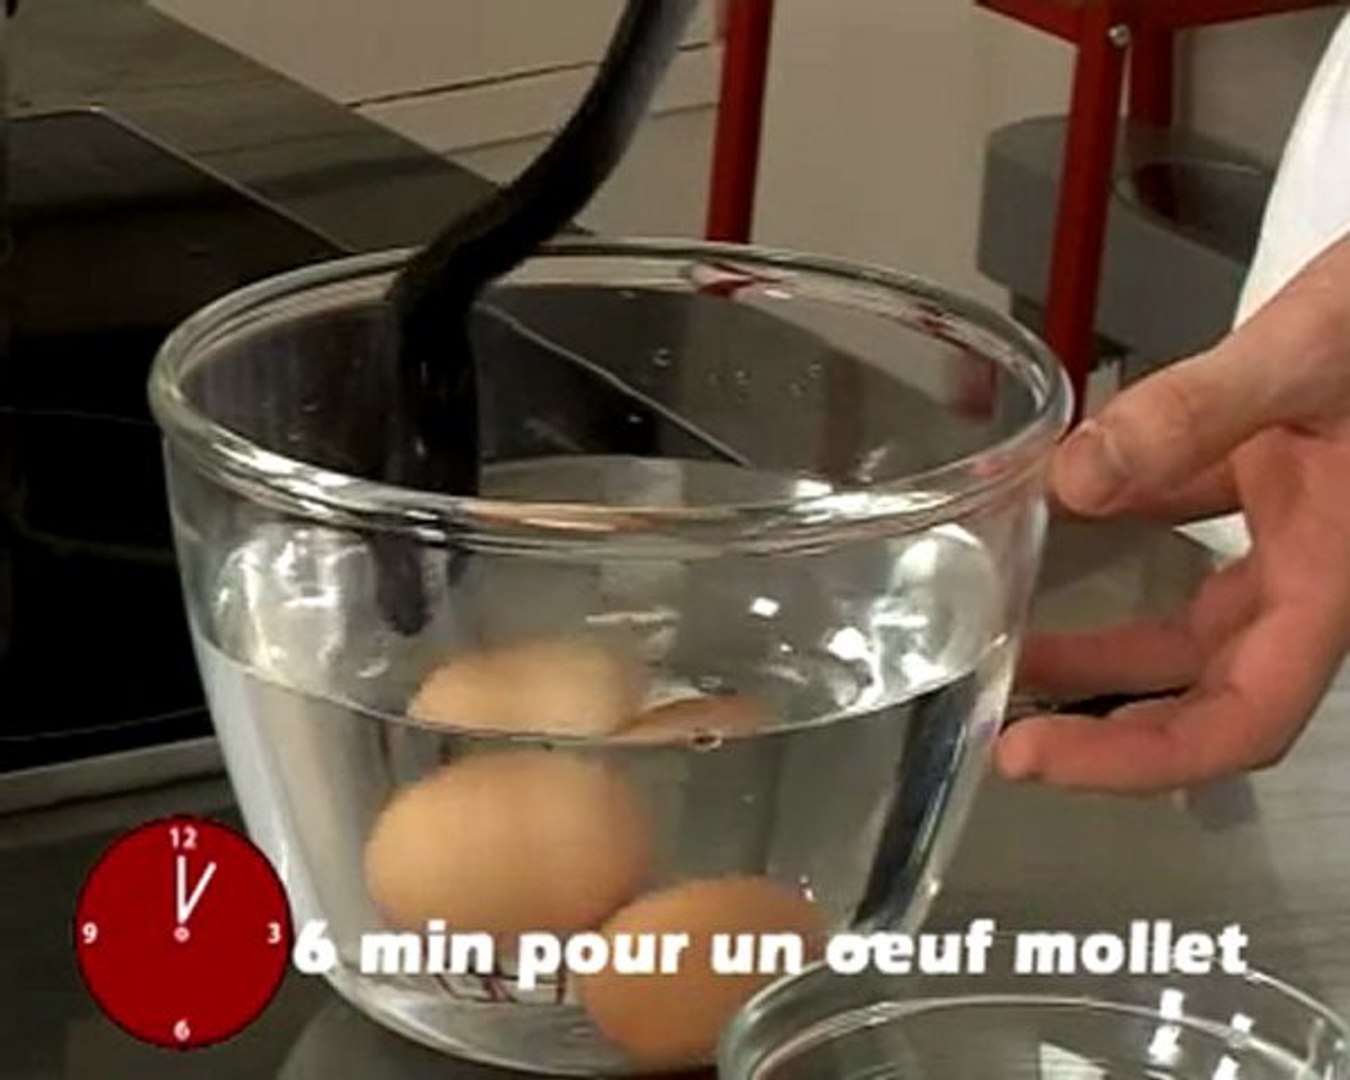 Cuisson des œufs en coquille - Fiche recette illustrée - Meilleur du Chef